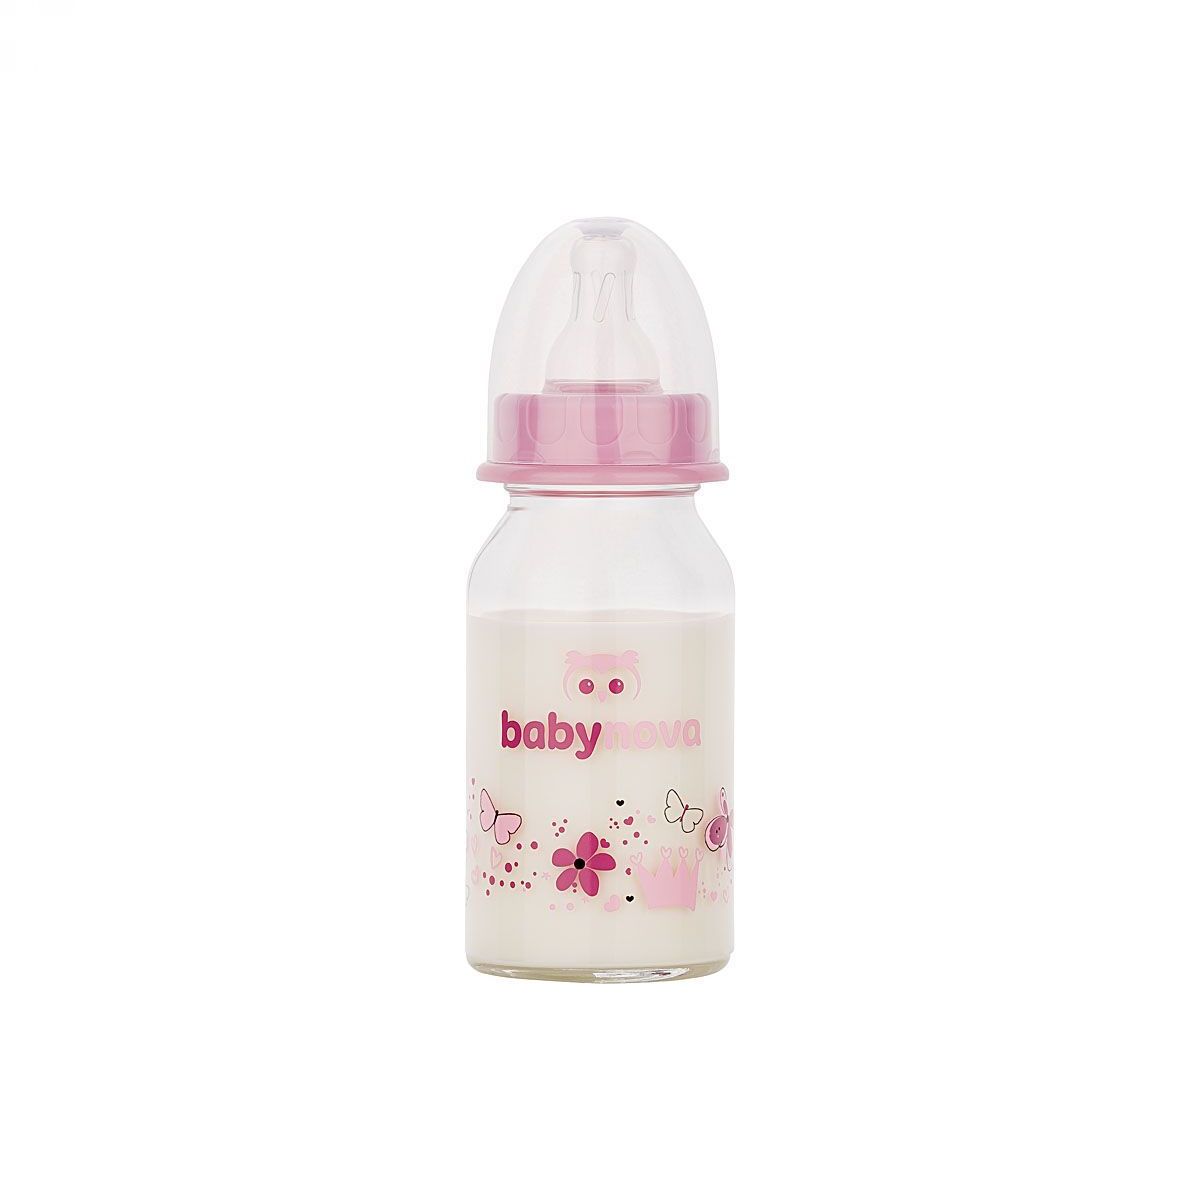 BABY-NOVA Steklena steklenička 120 ml  - roza srčki/rožice